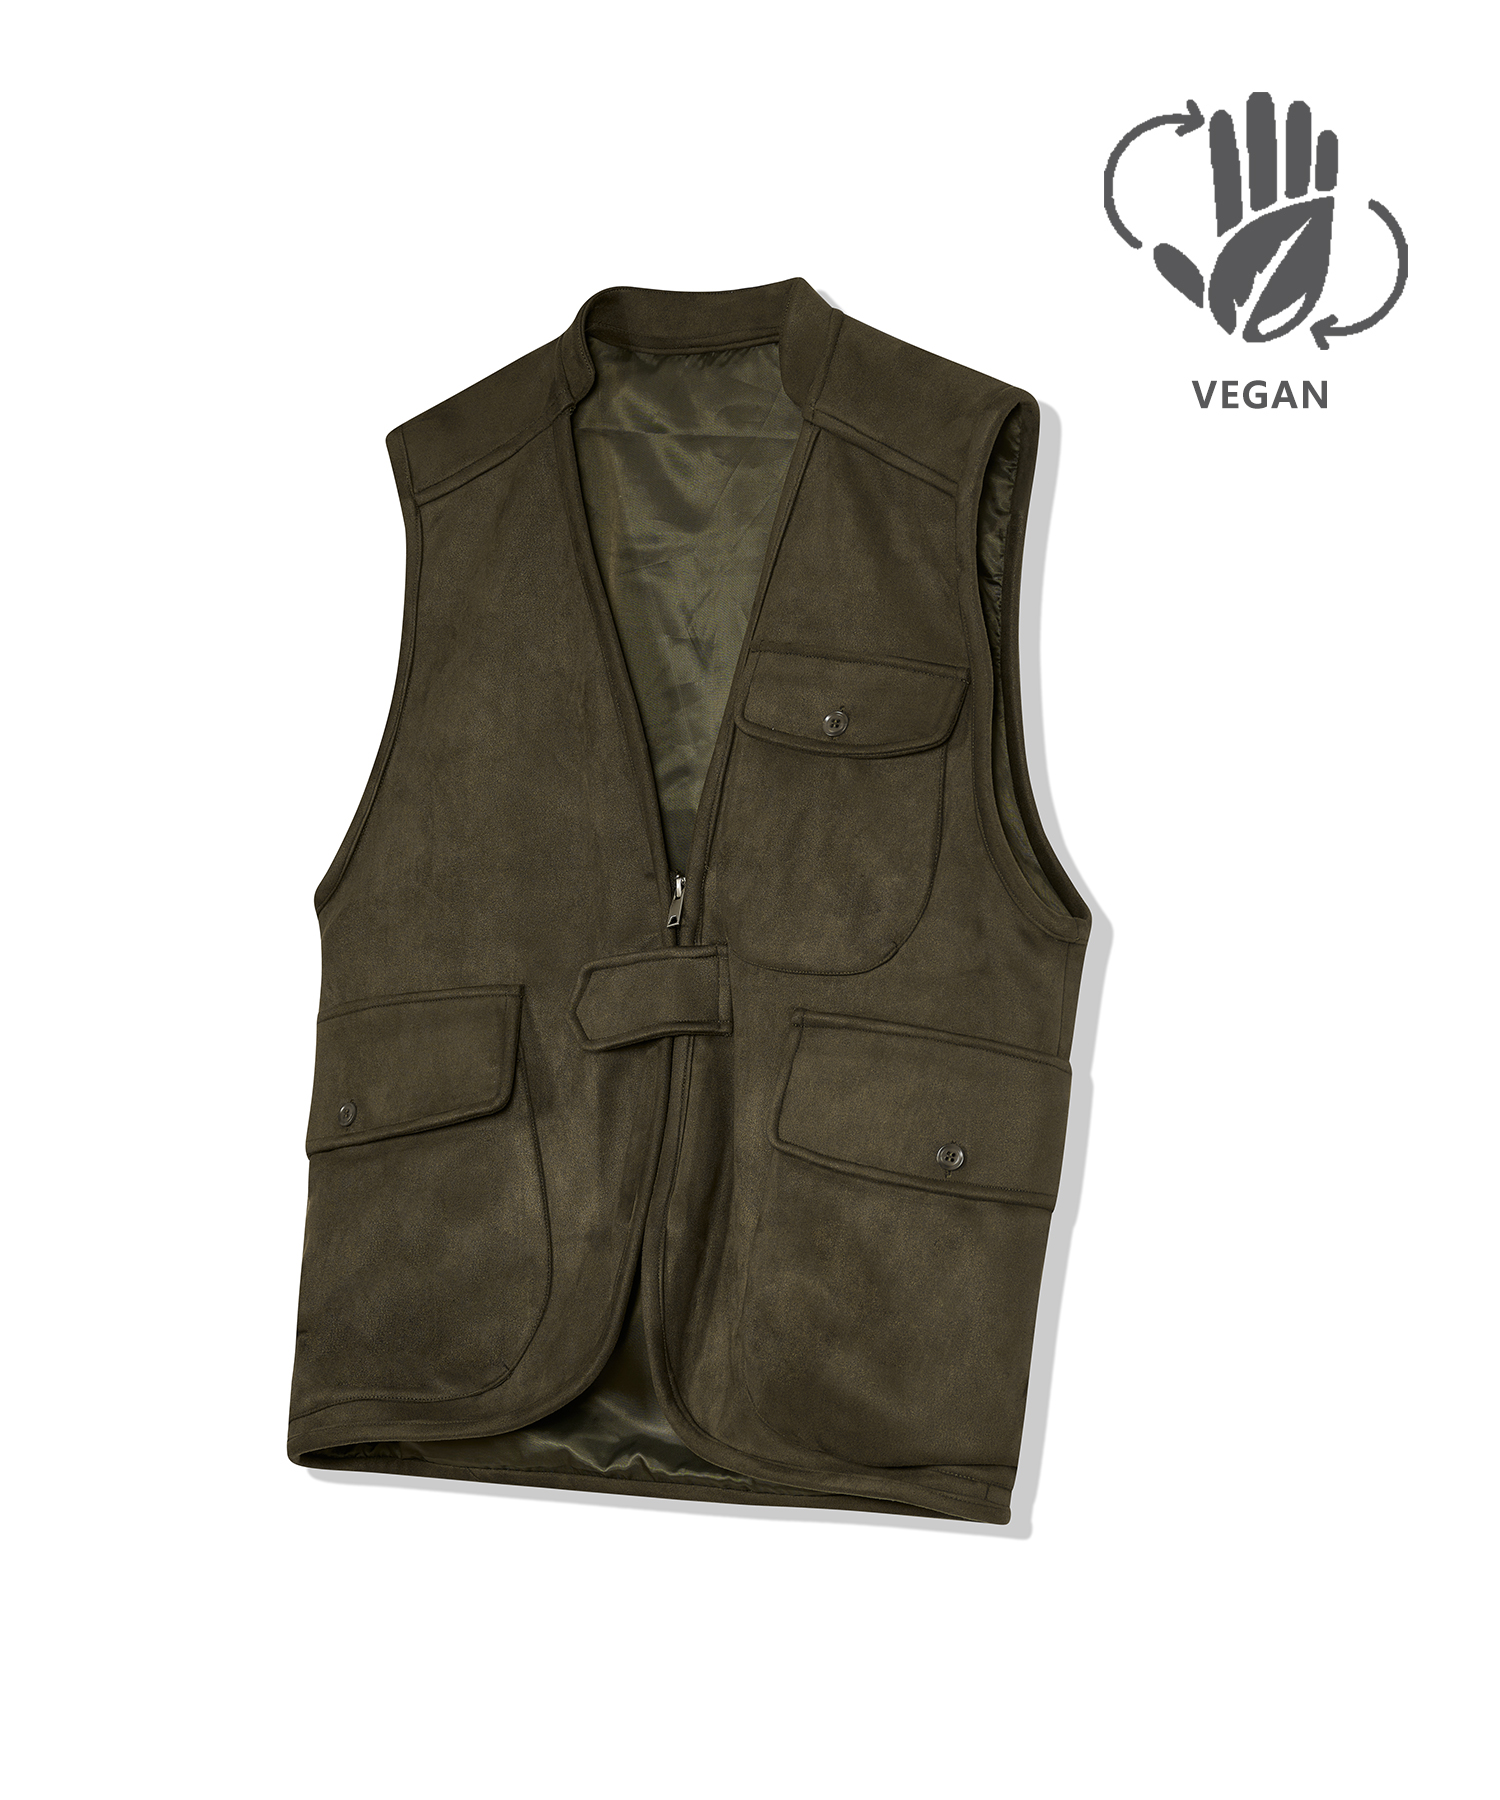 87-STAN025 [Vegan Suede] Multi Pocket Suede Vest Khaki